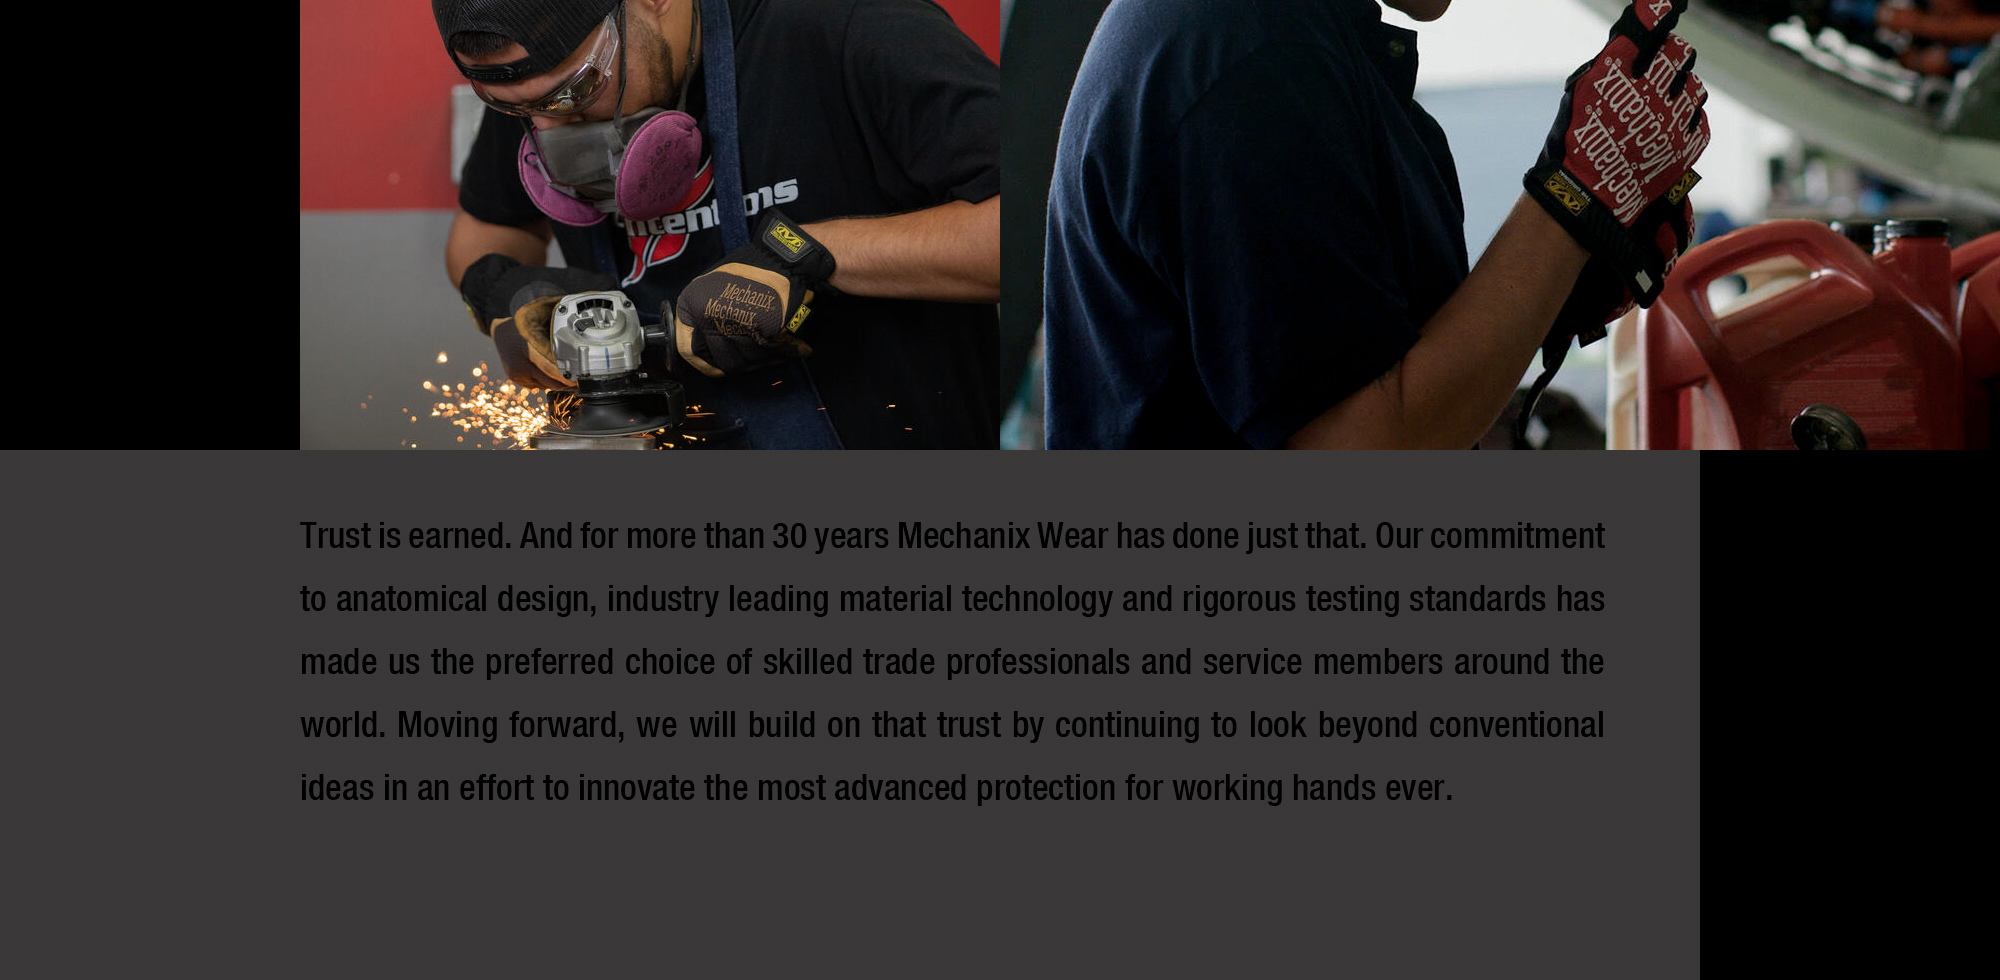 Mechanix,Mechanix Work Gloves,Mechanix Wear,Mechanix Wear LLC